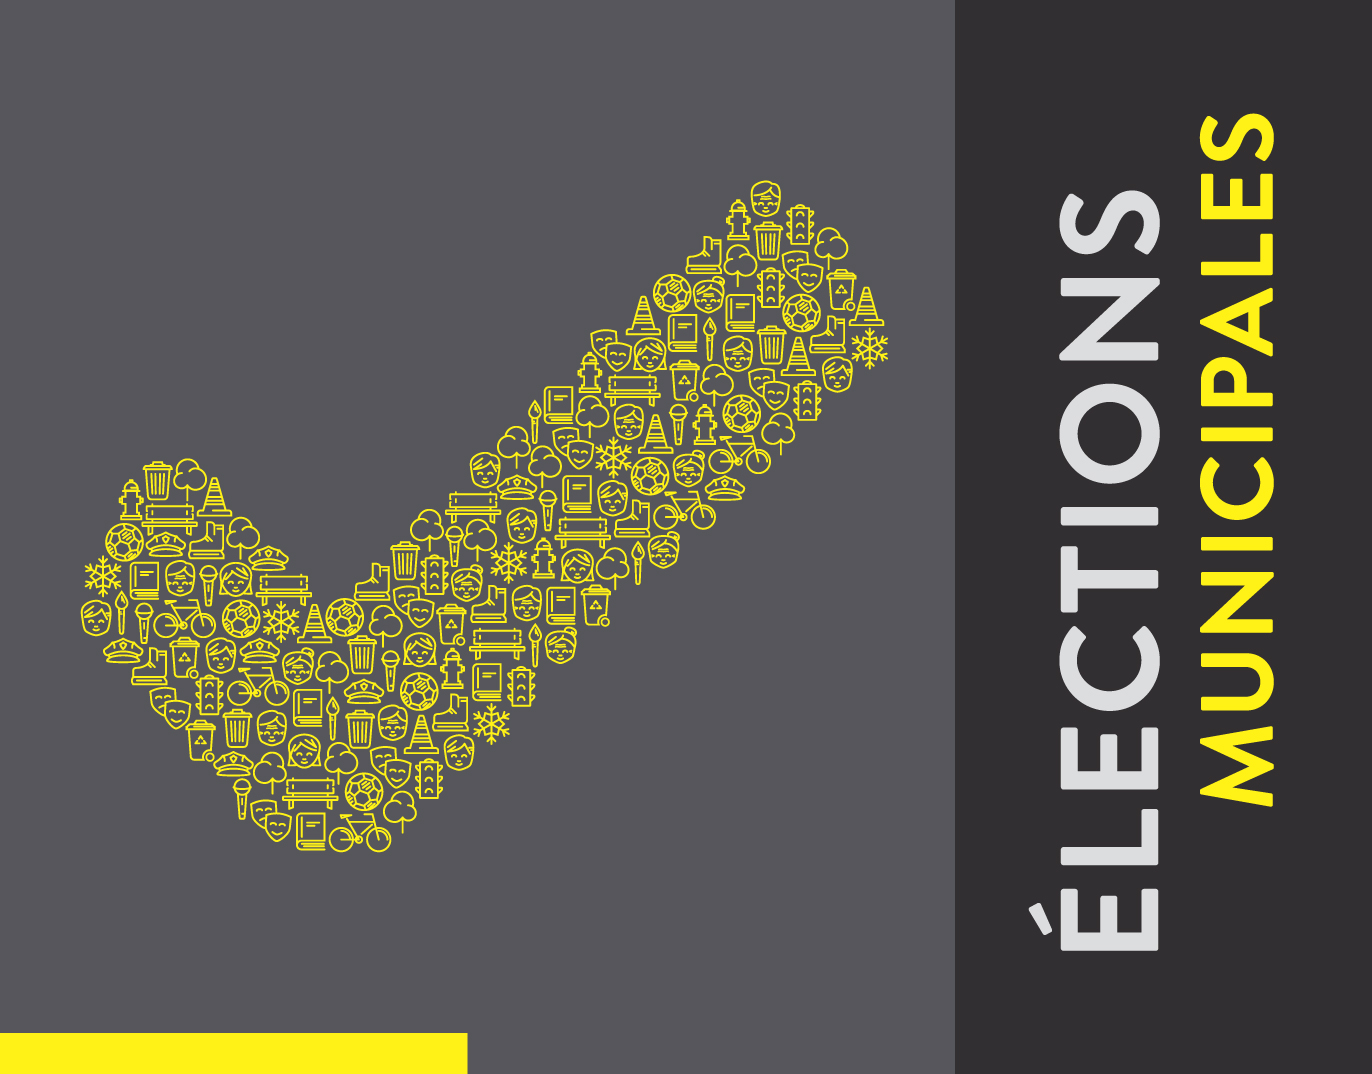 Élections municipales 2017 : accessibilité des lieux de votation